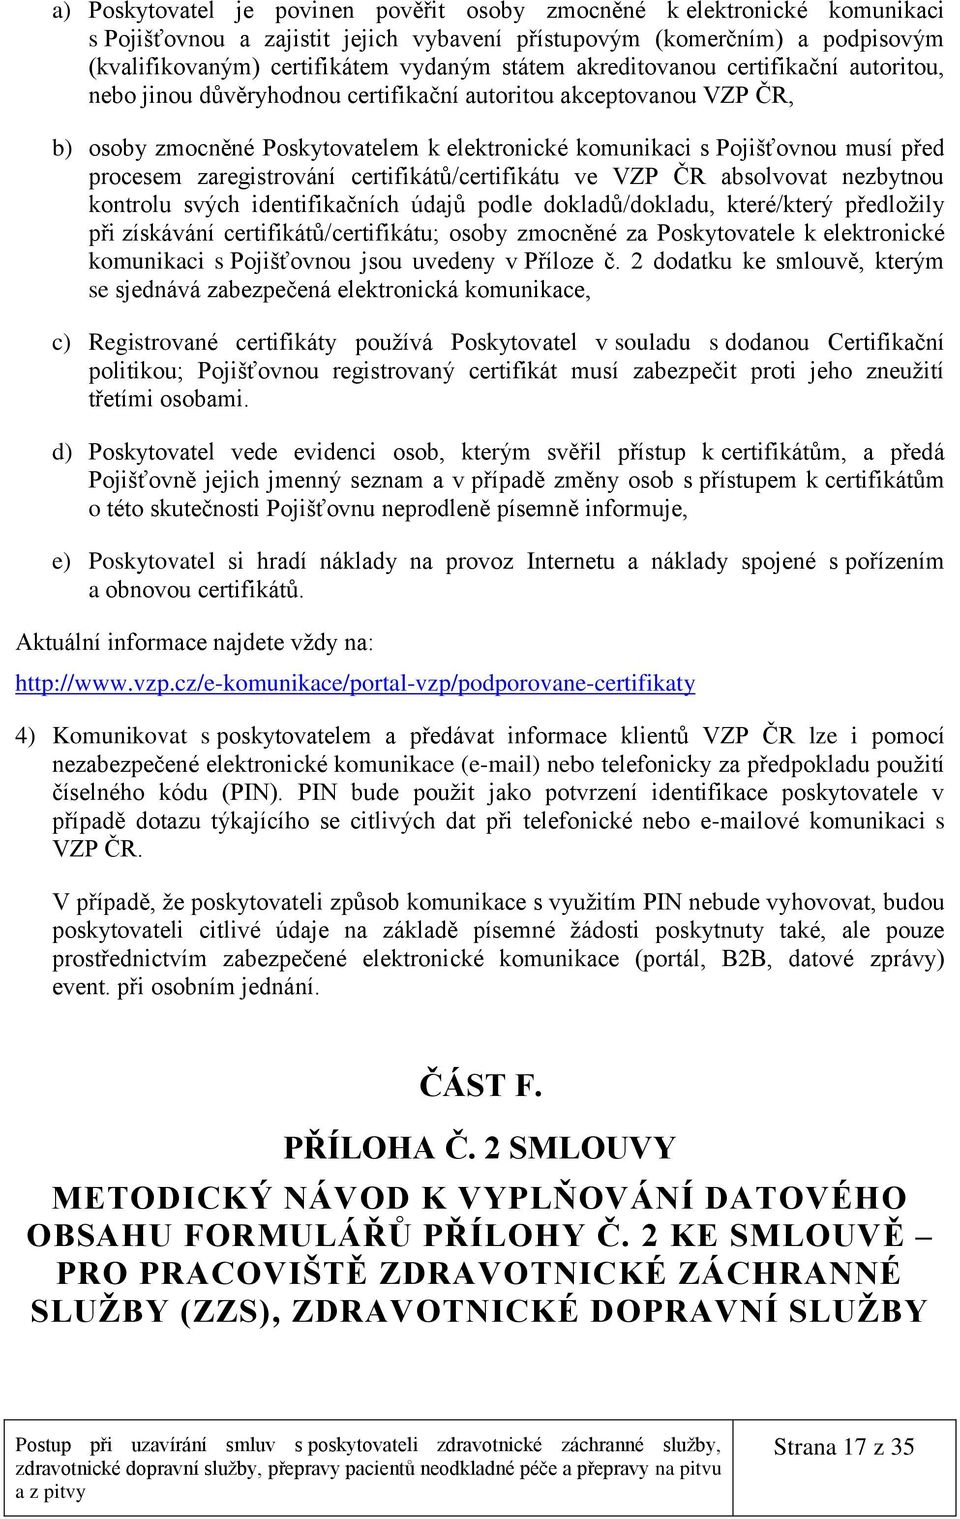 zaregistrování certifikátů/certifikátu ve VZP ČR absolvovat nezbytnou kontrolu svých identifikačních údajů podle dokladů/dokladu, které/který předložily při získávání certifikátů/certifikátu; osoby